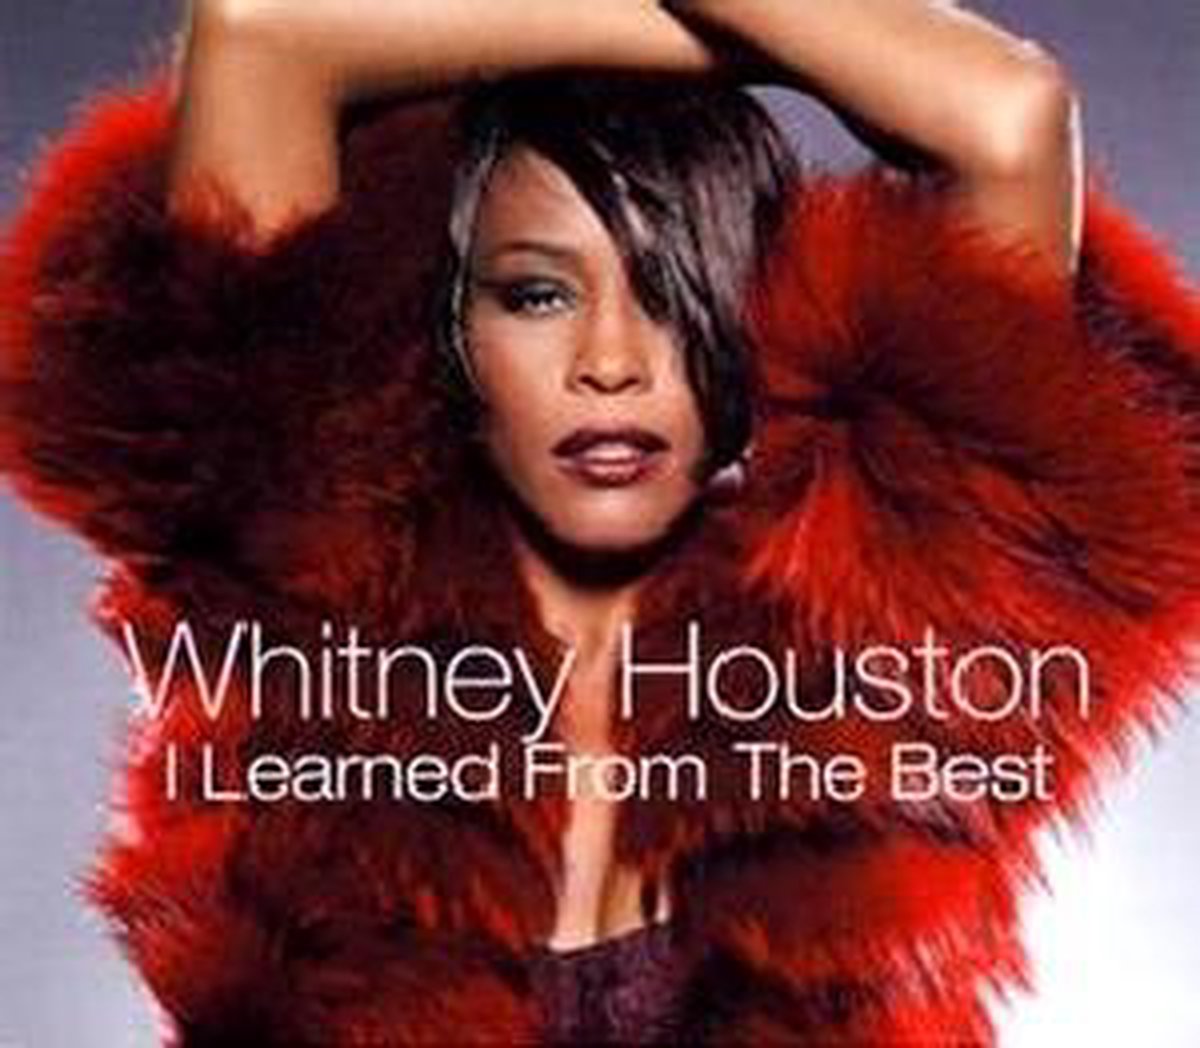 I Learned From The - Whitney Houston - Whitney Houston